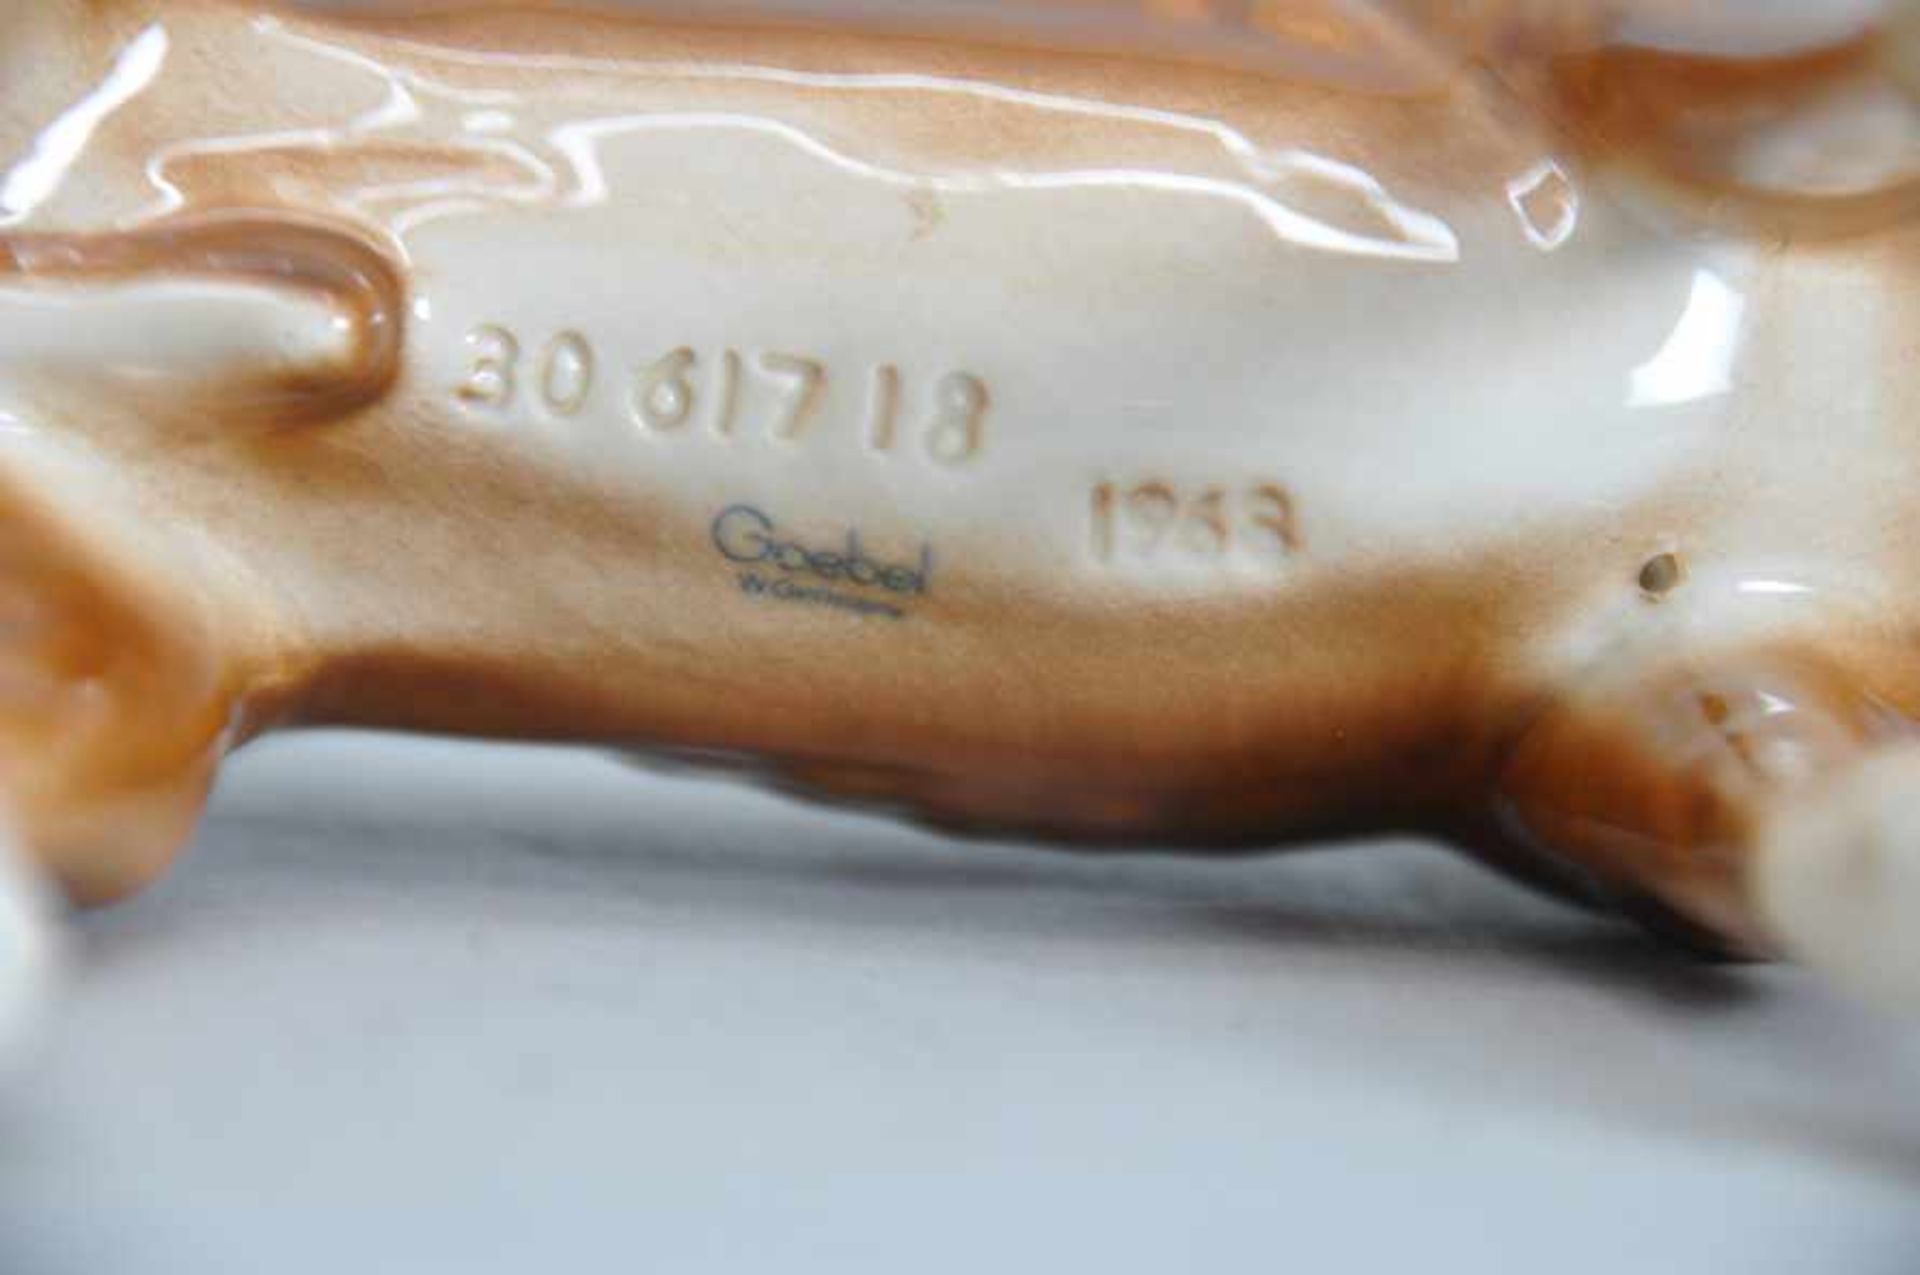 Boxer, Porzellanfigur, polychrom bemalt.Goebel, Modellnummer 3061718, Jahr 1968. Maße ca. 21 x 19 - Image 7 of 7